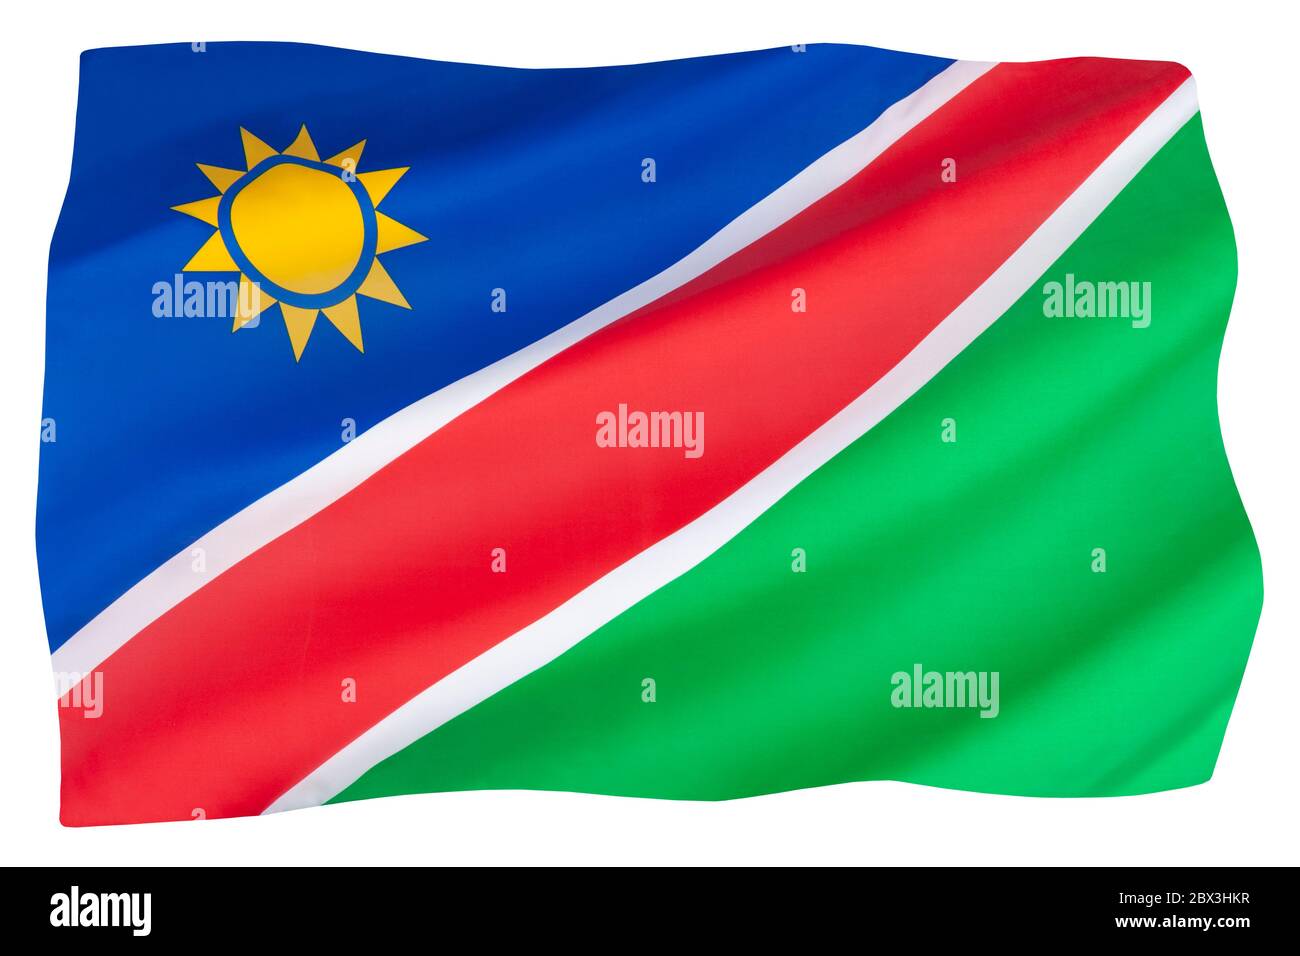 Le drapeau national de la Namibie - adopté le 21 mars 1990 à l'indépendance de l'Afrique du Sud. Banque D'Images